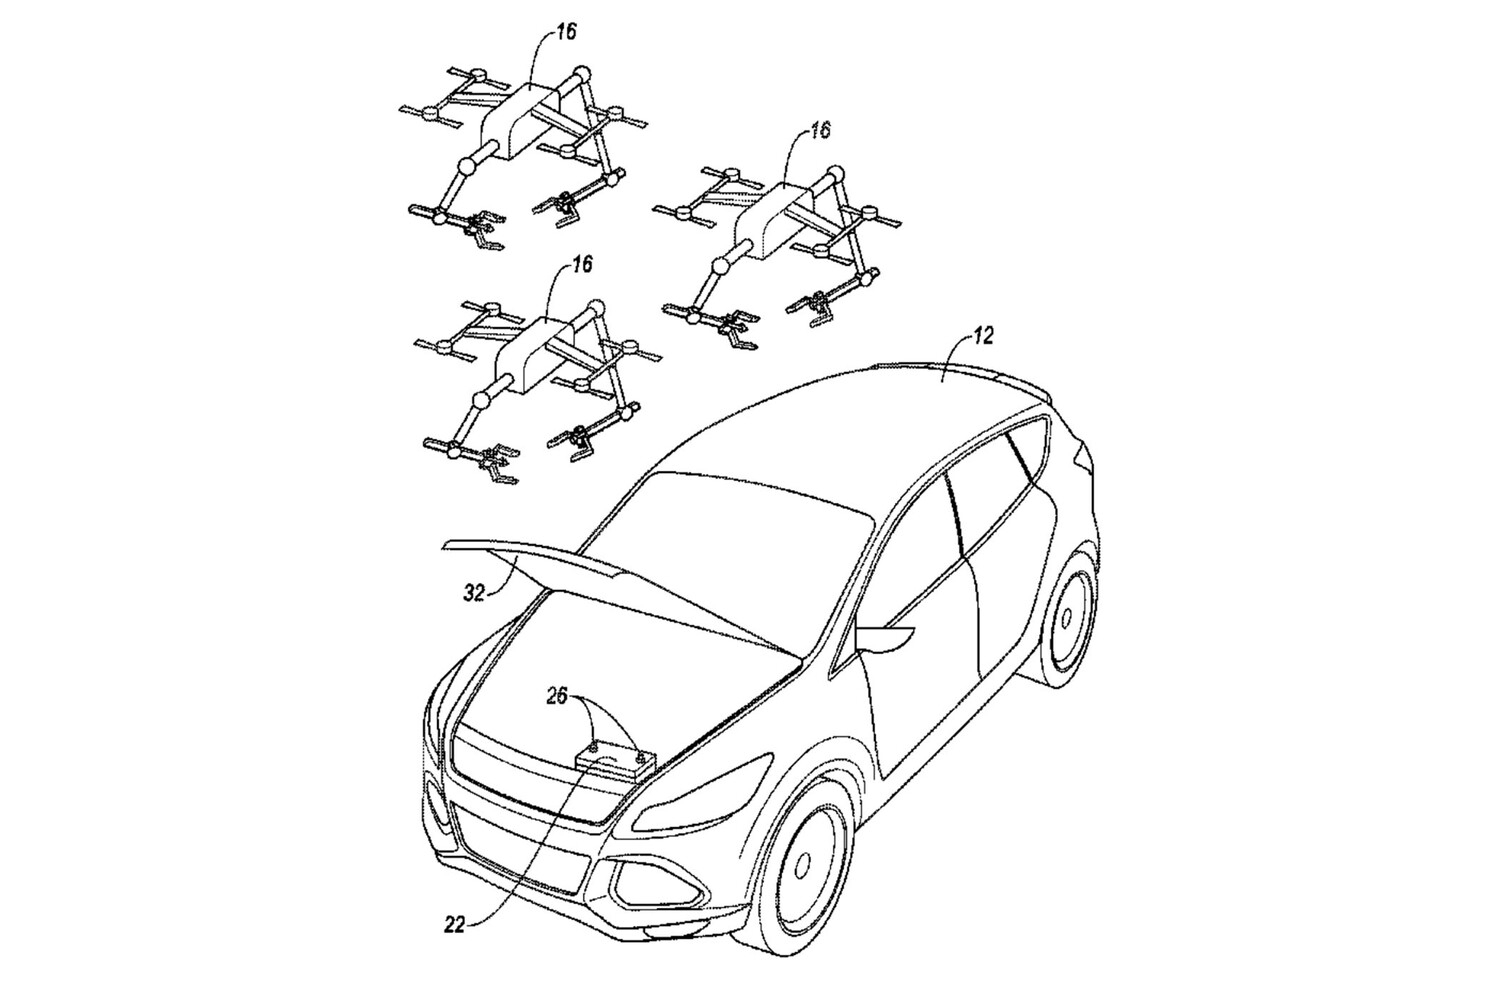 Ford сделает квадрокоптеры для удаленного ремонта автомобилей